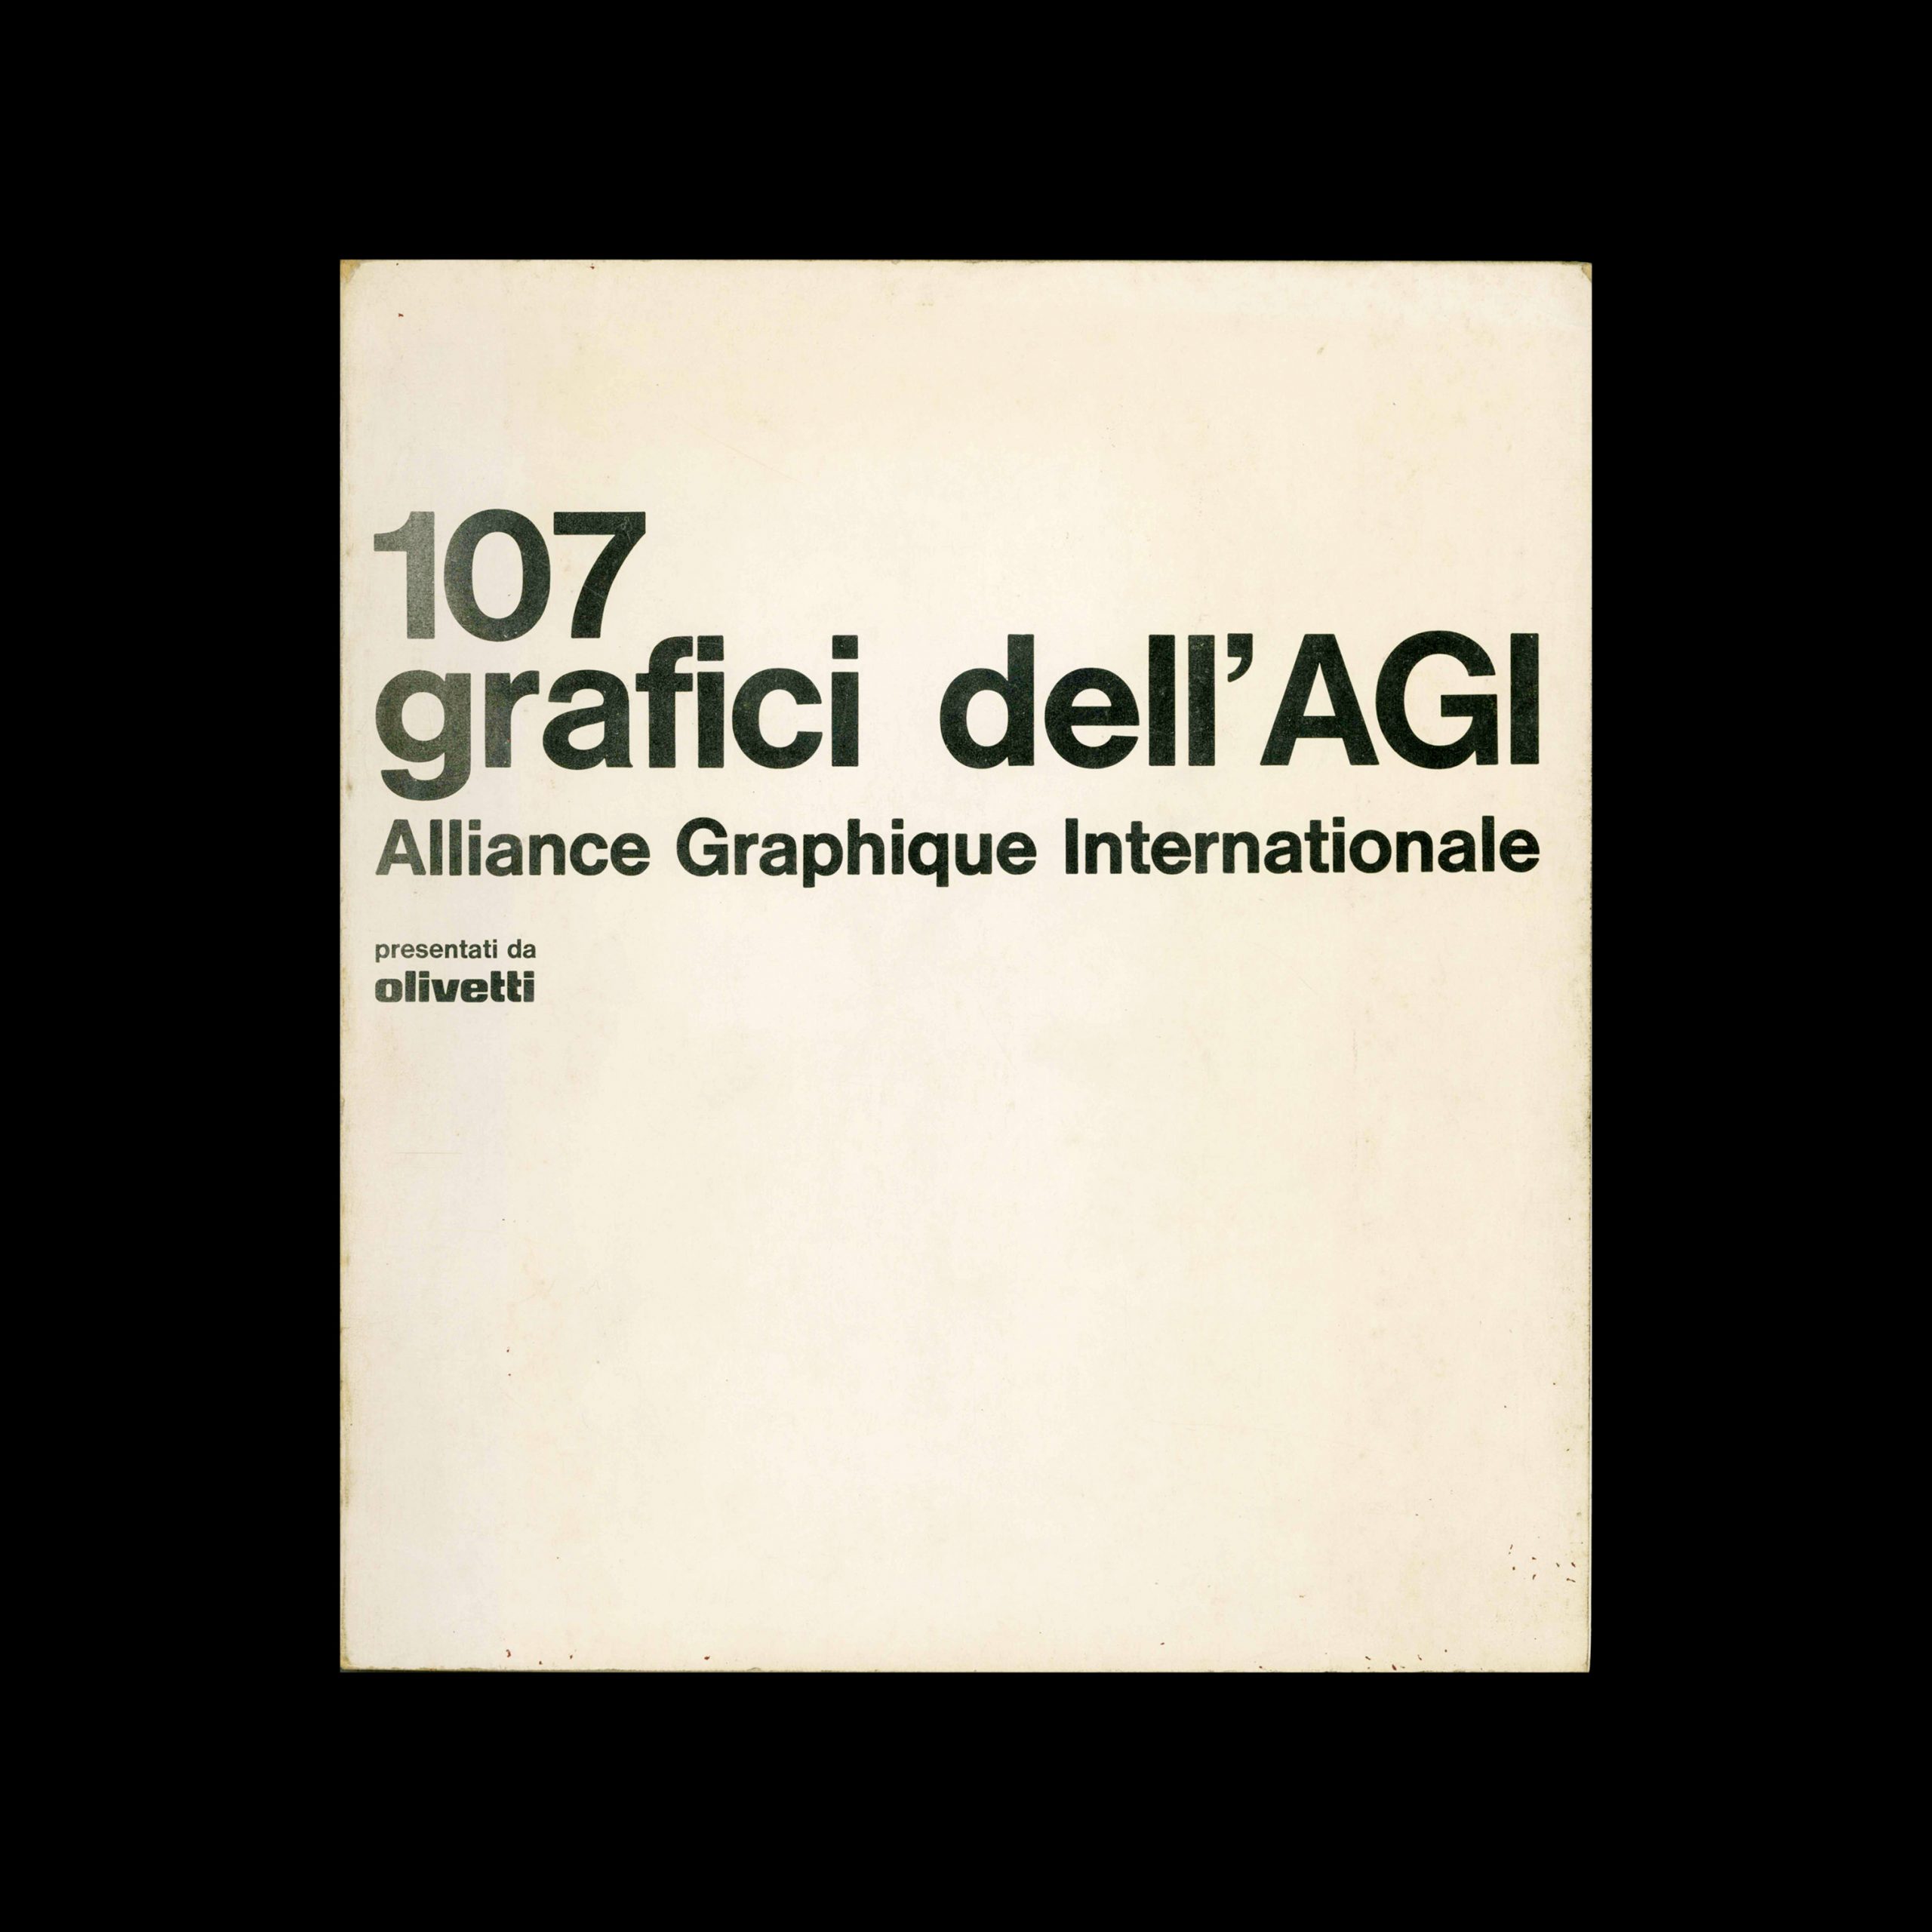 107 grafici dell’ AGI - Alliance Graphique Internationale, 1974